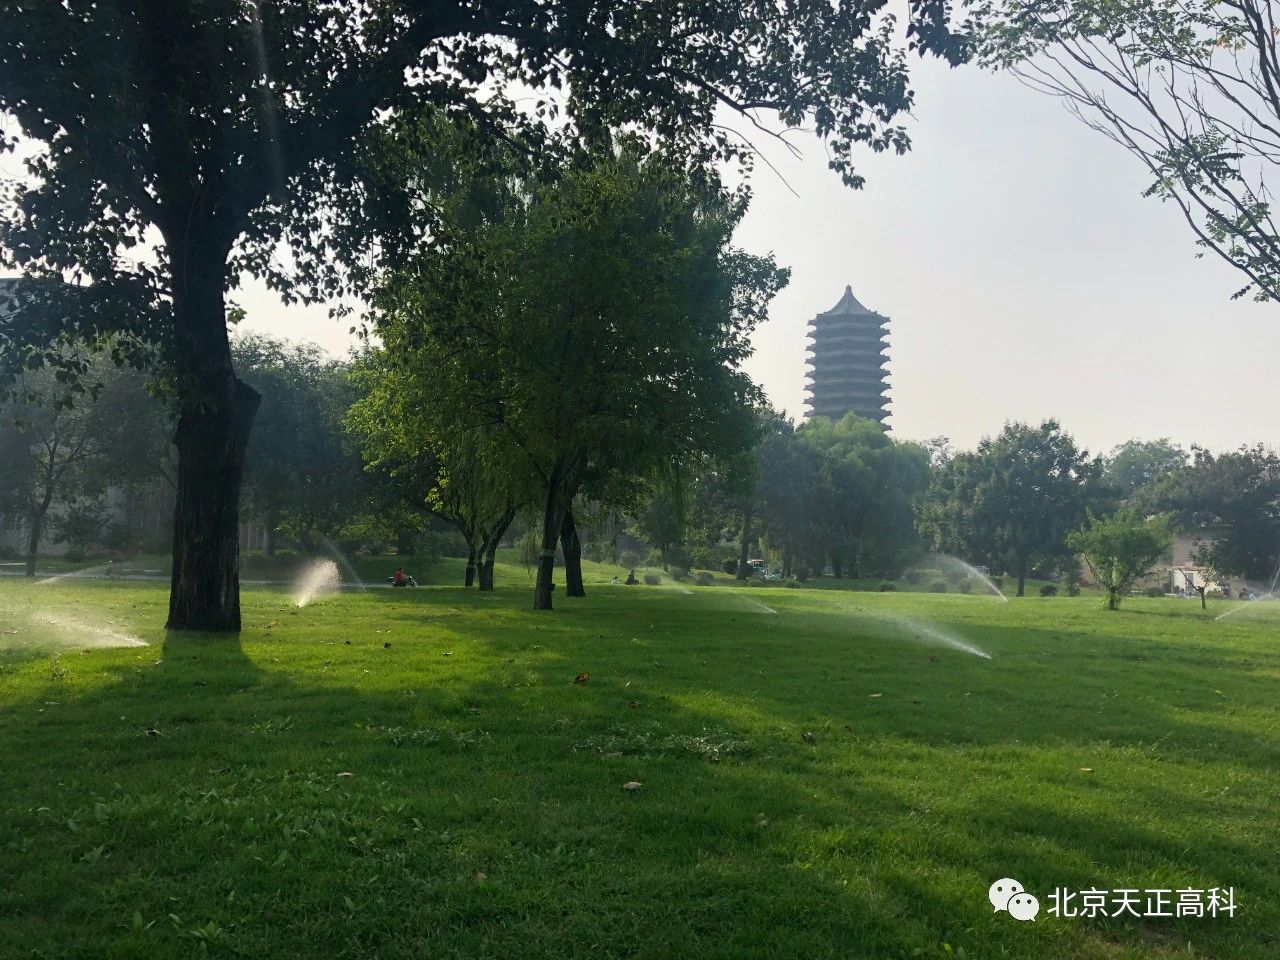 北京大学大草坪喷灌建设改造工程